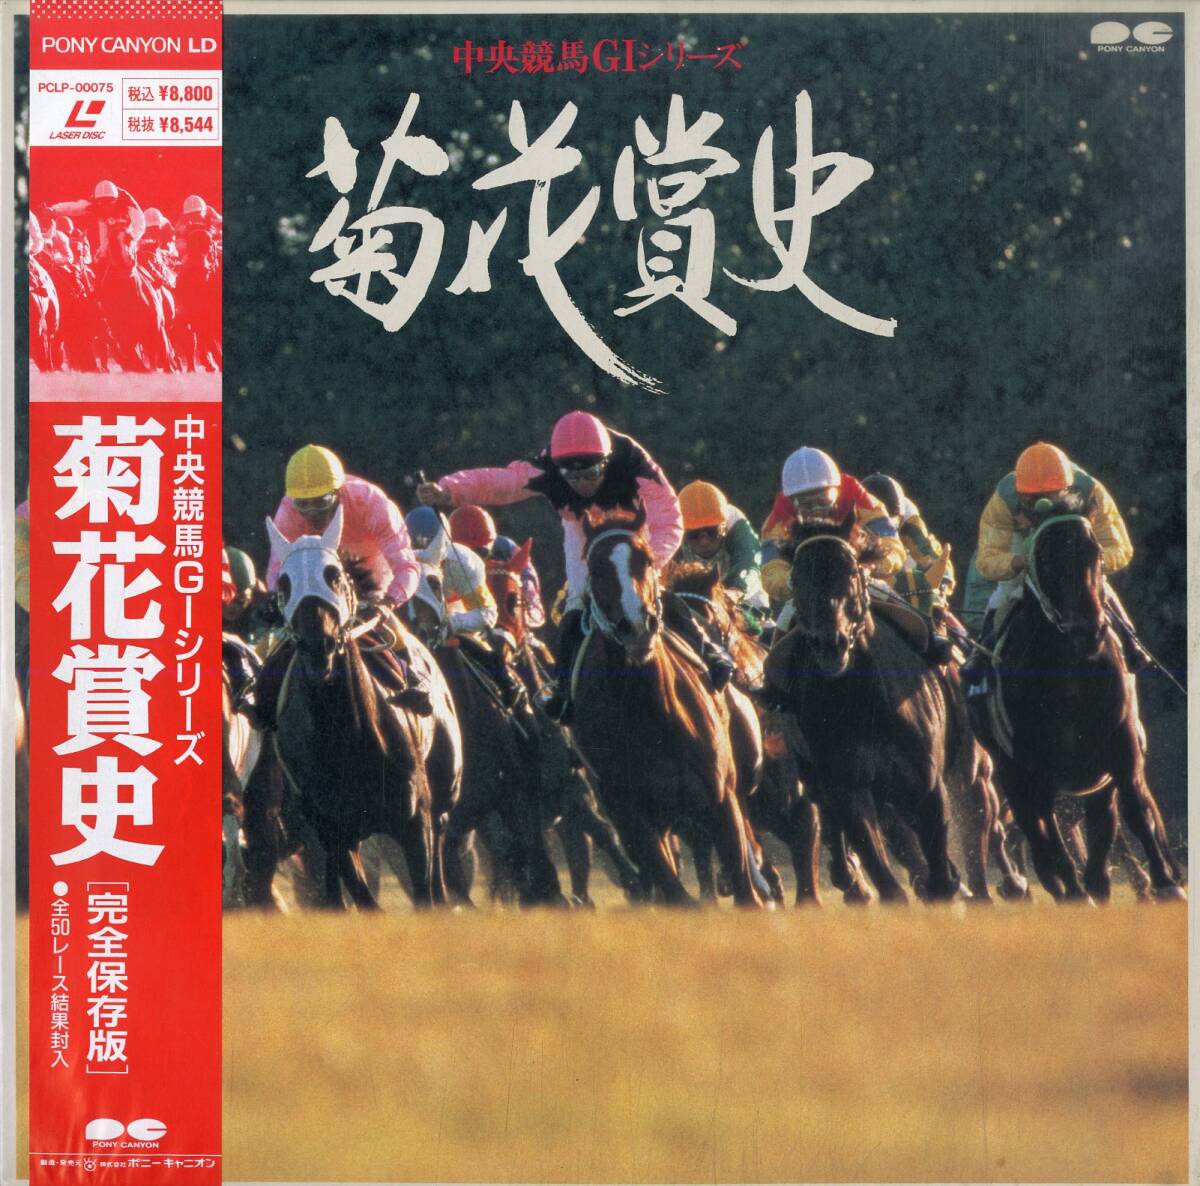 B00179816/LD2枚組/「中央競馬GIシリーズ:菊花賞史」の画像1